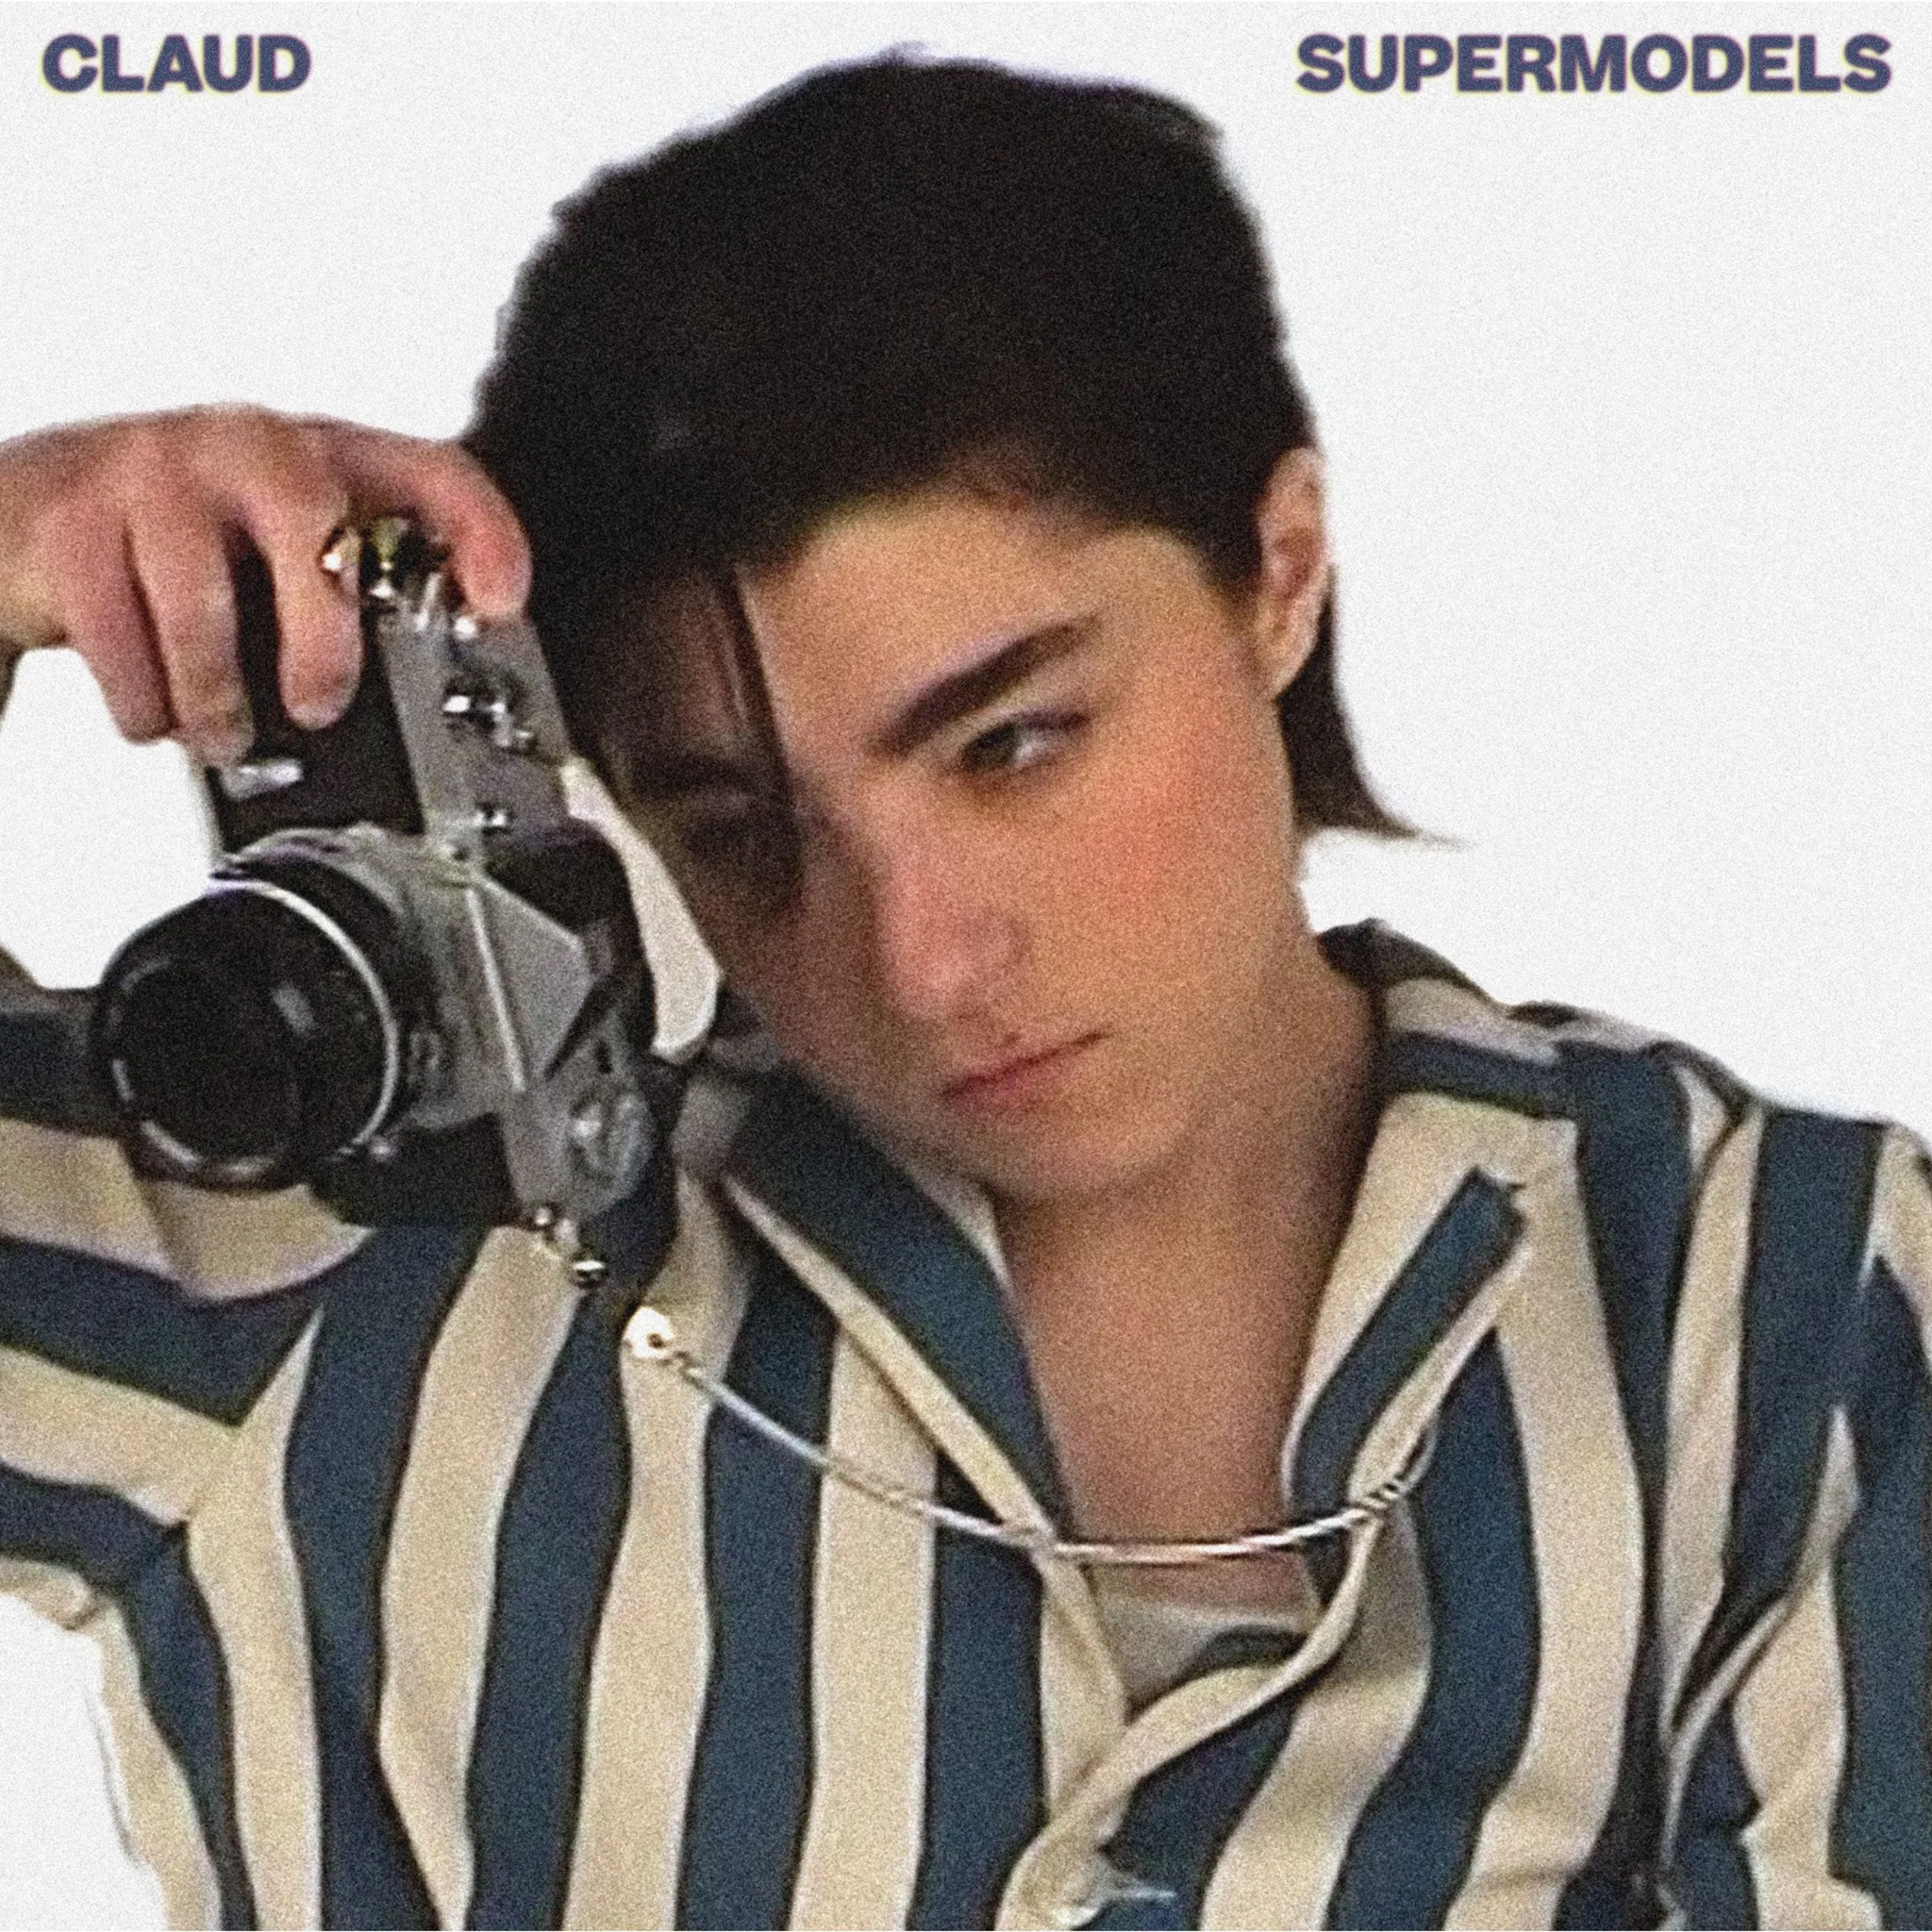 Claud - Supermodels artwork